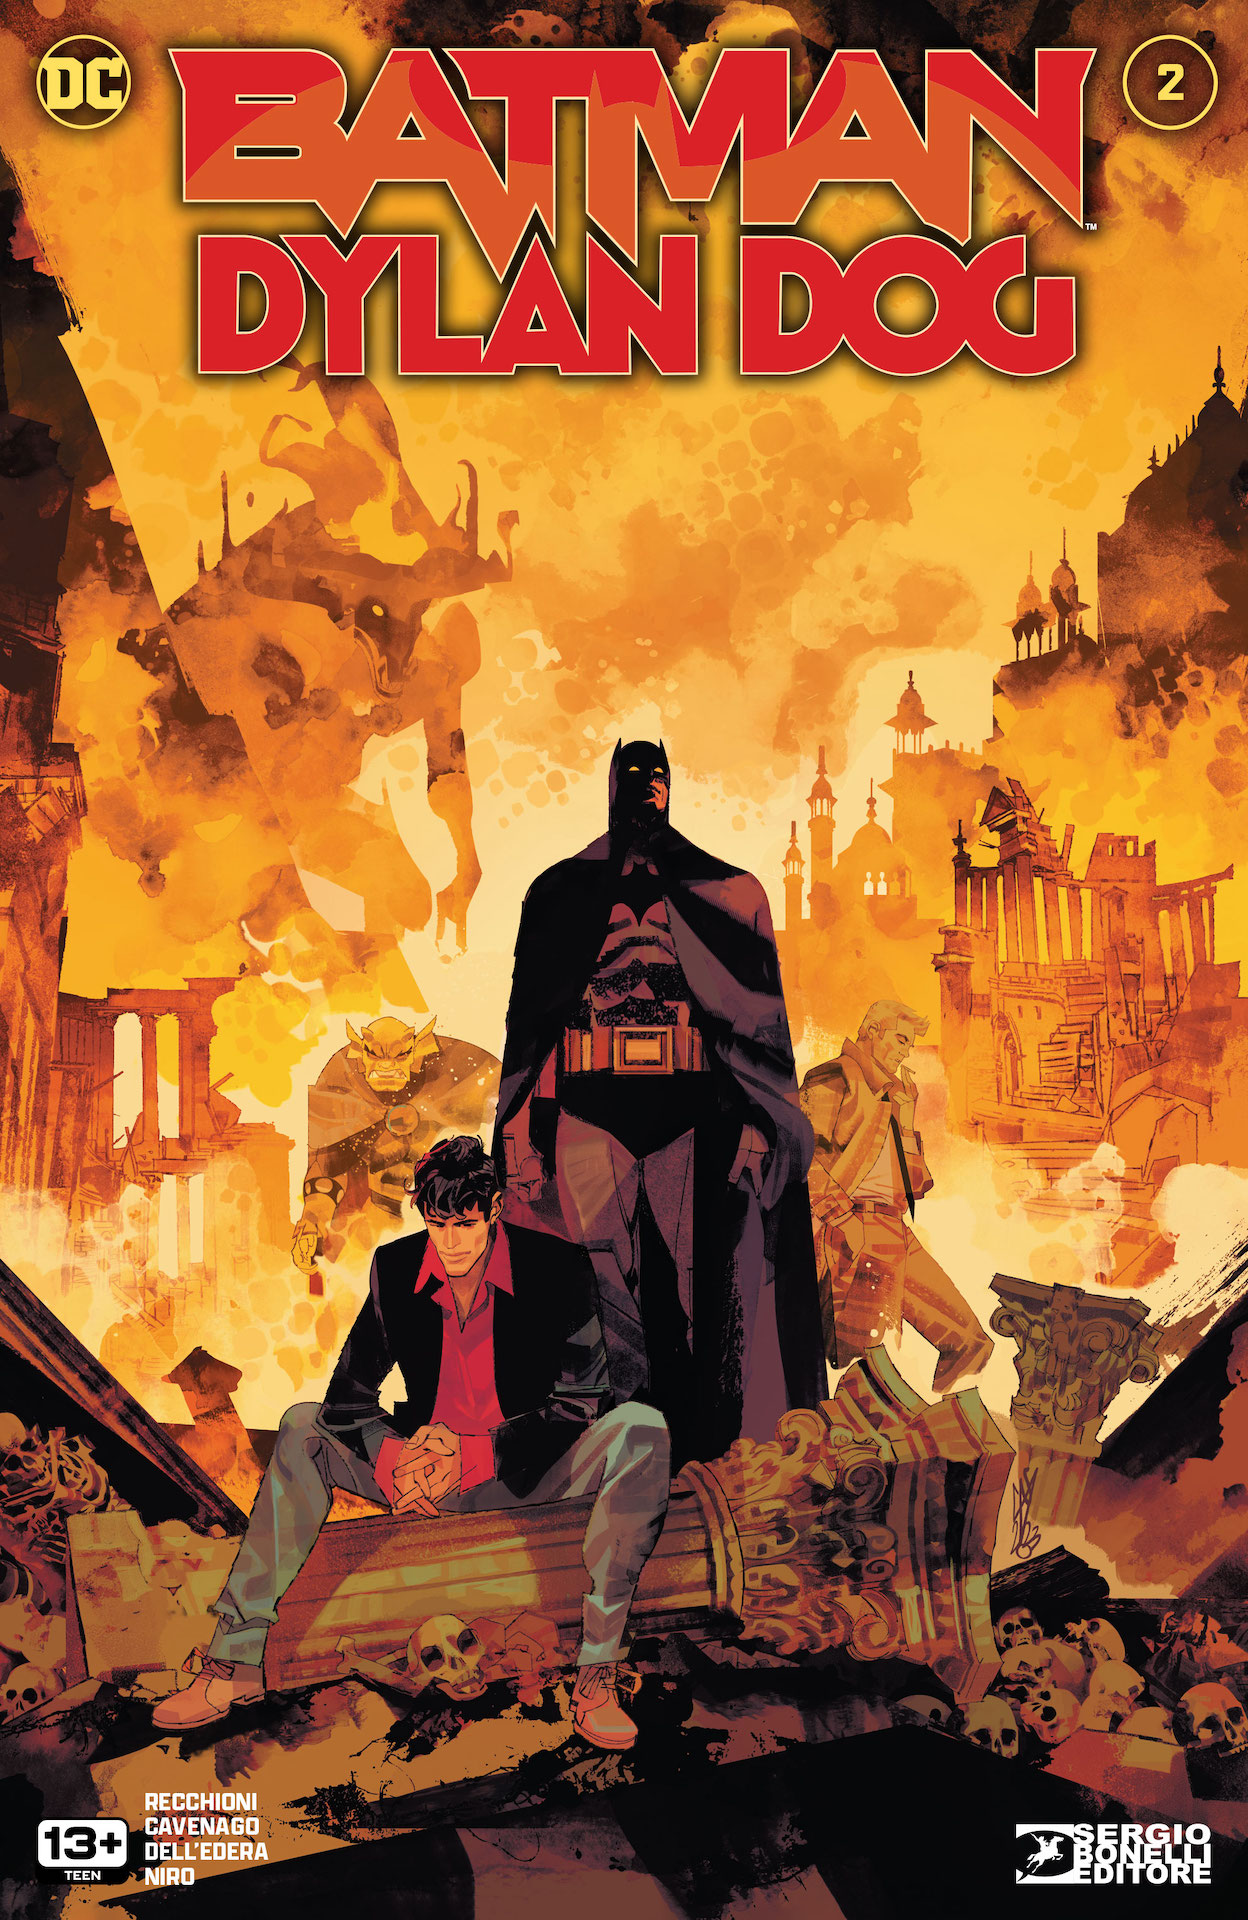 DC Preview: Batman / Dylan Dog #2